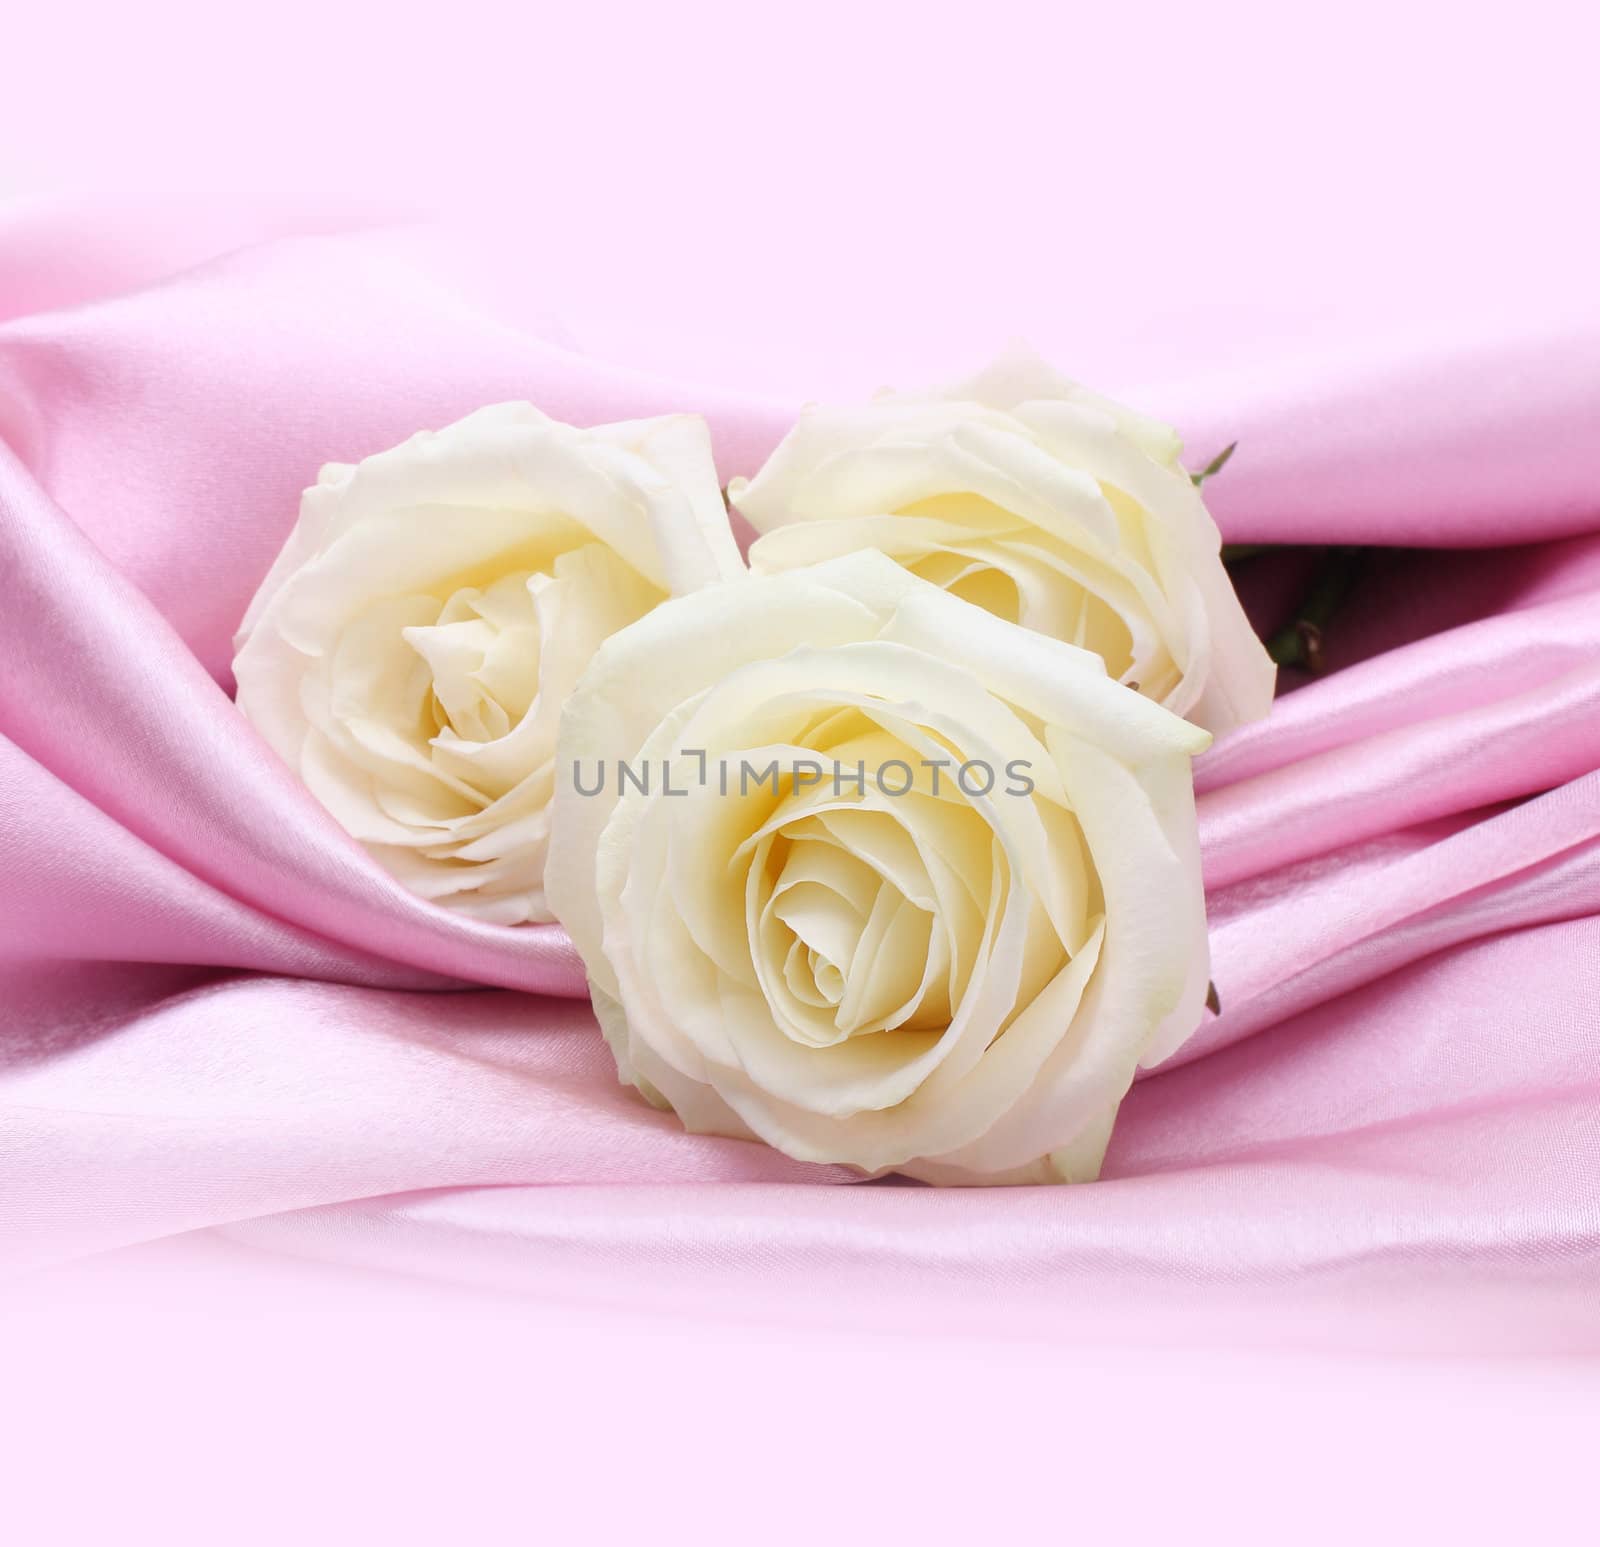 rose on pink silk background by rudchenko